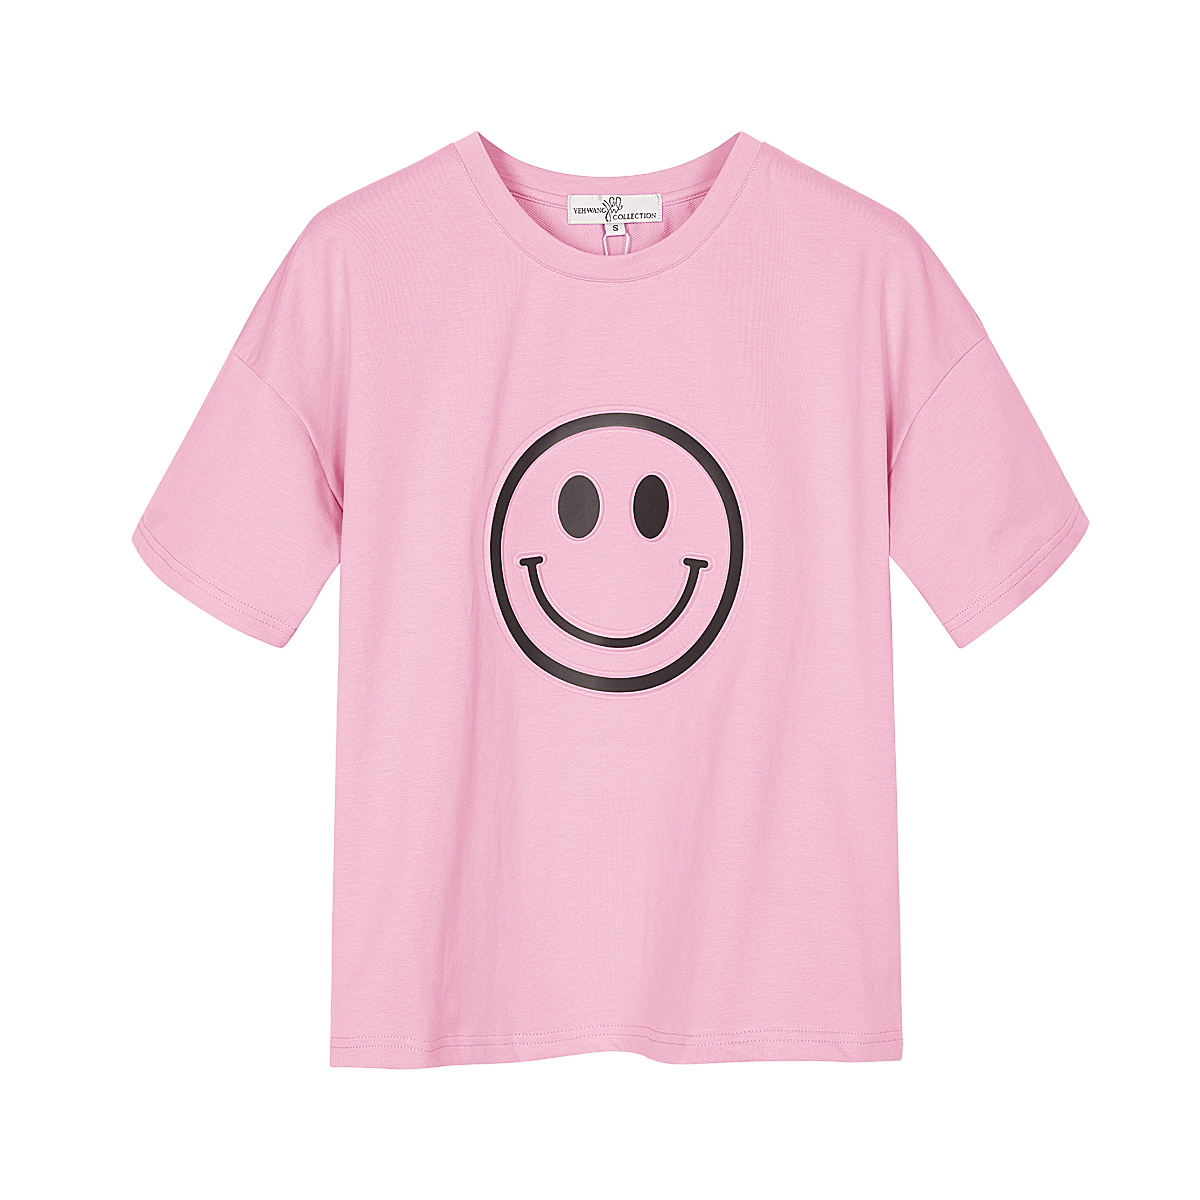 T-shirt mit smiley-gesicht